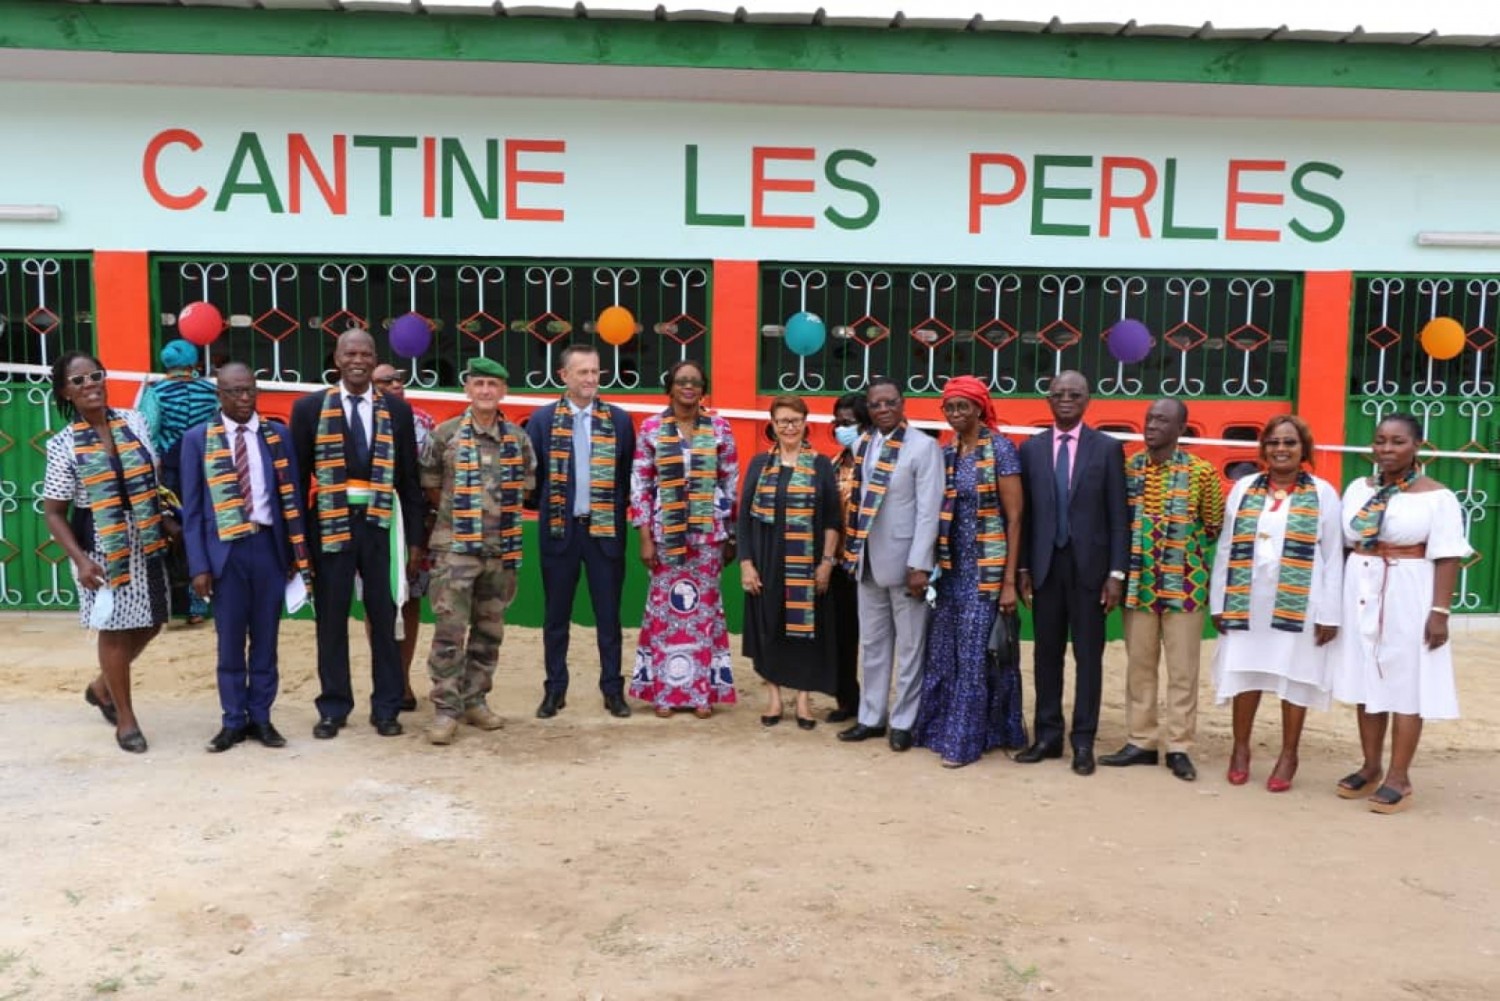 Côte d'Ivoire : Le Groupe Scolaire les Perles de Cocody doté désormais d'une cantine scolaire de 200 places offerte par une Association Humanitaire